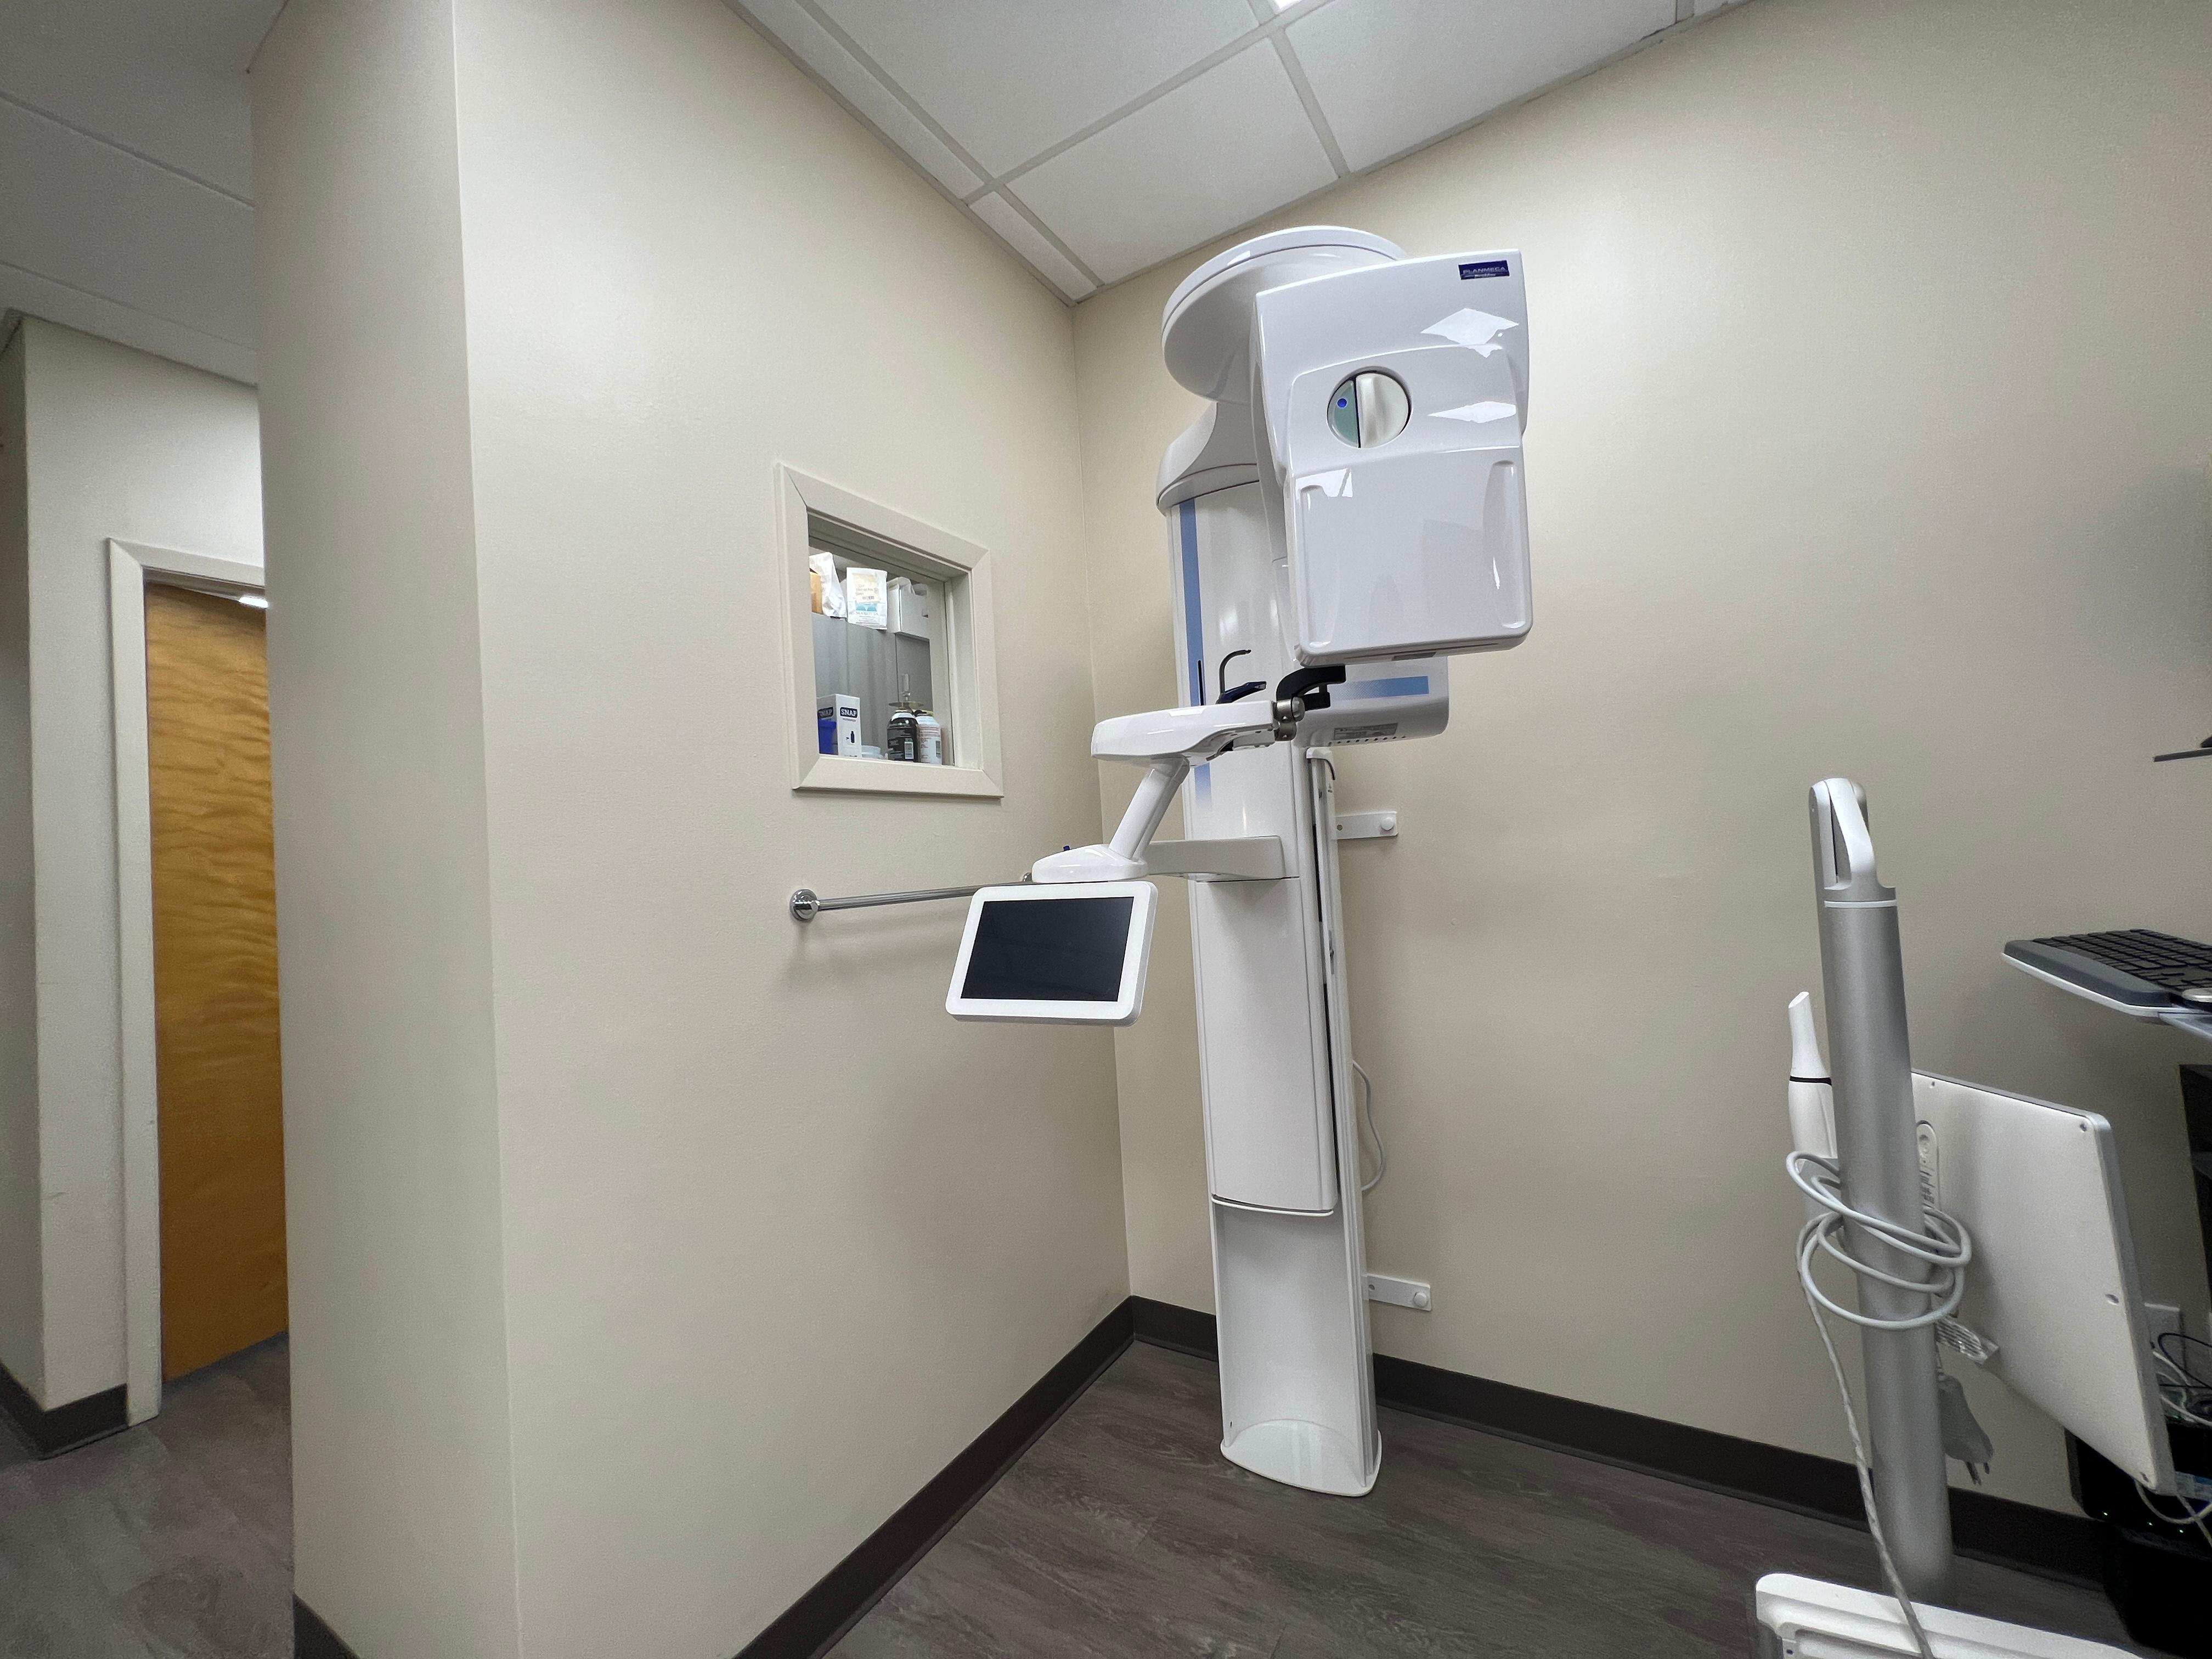 X-ray Room